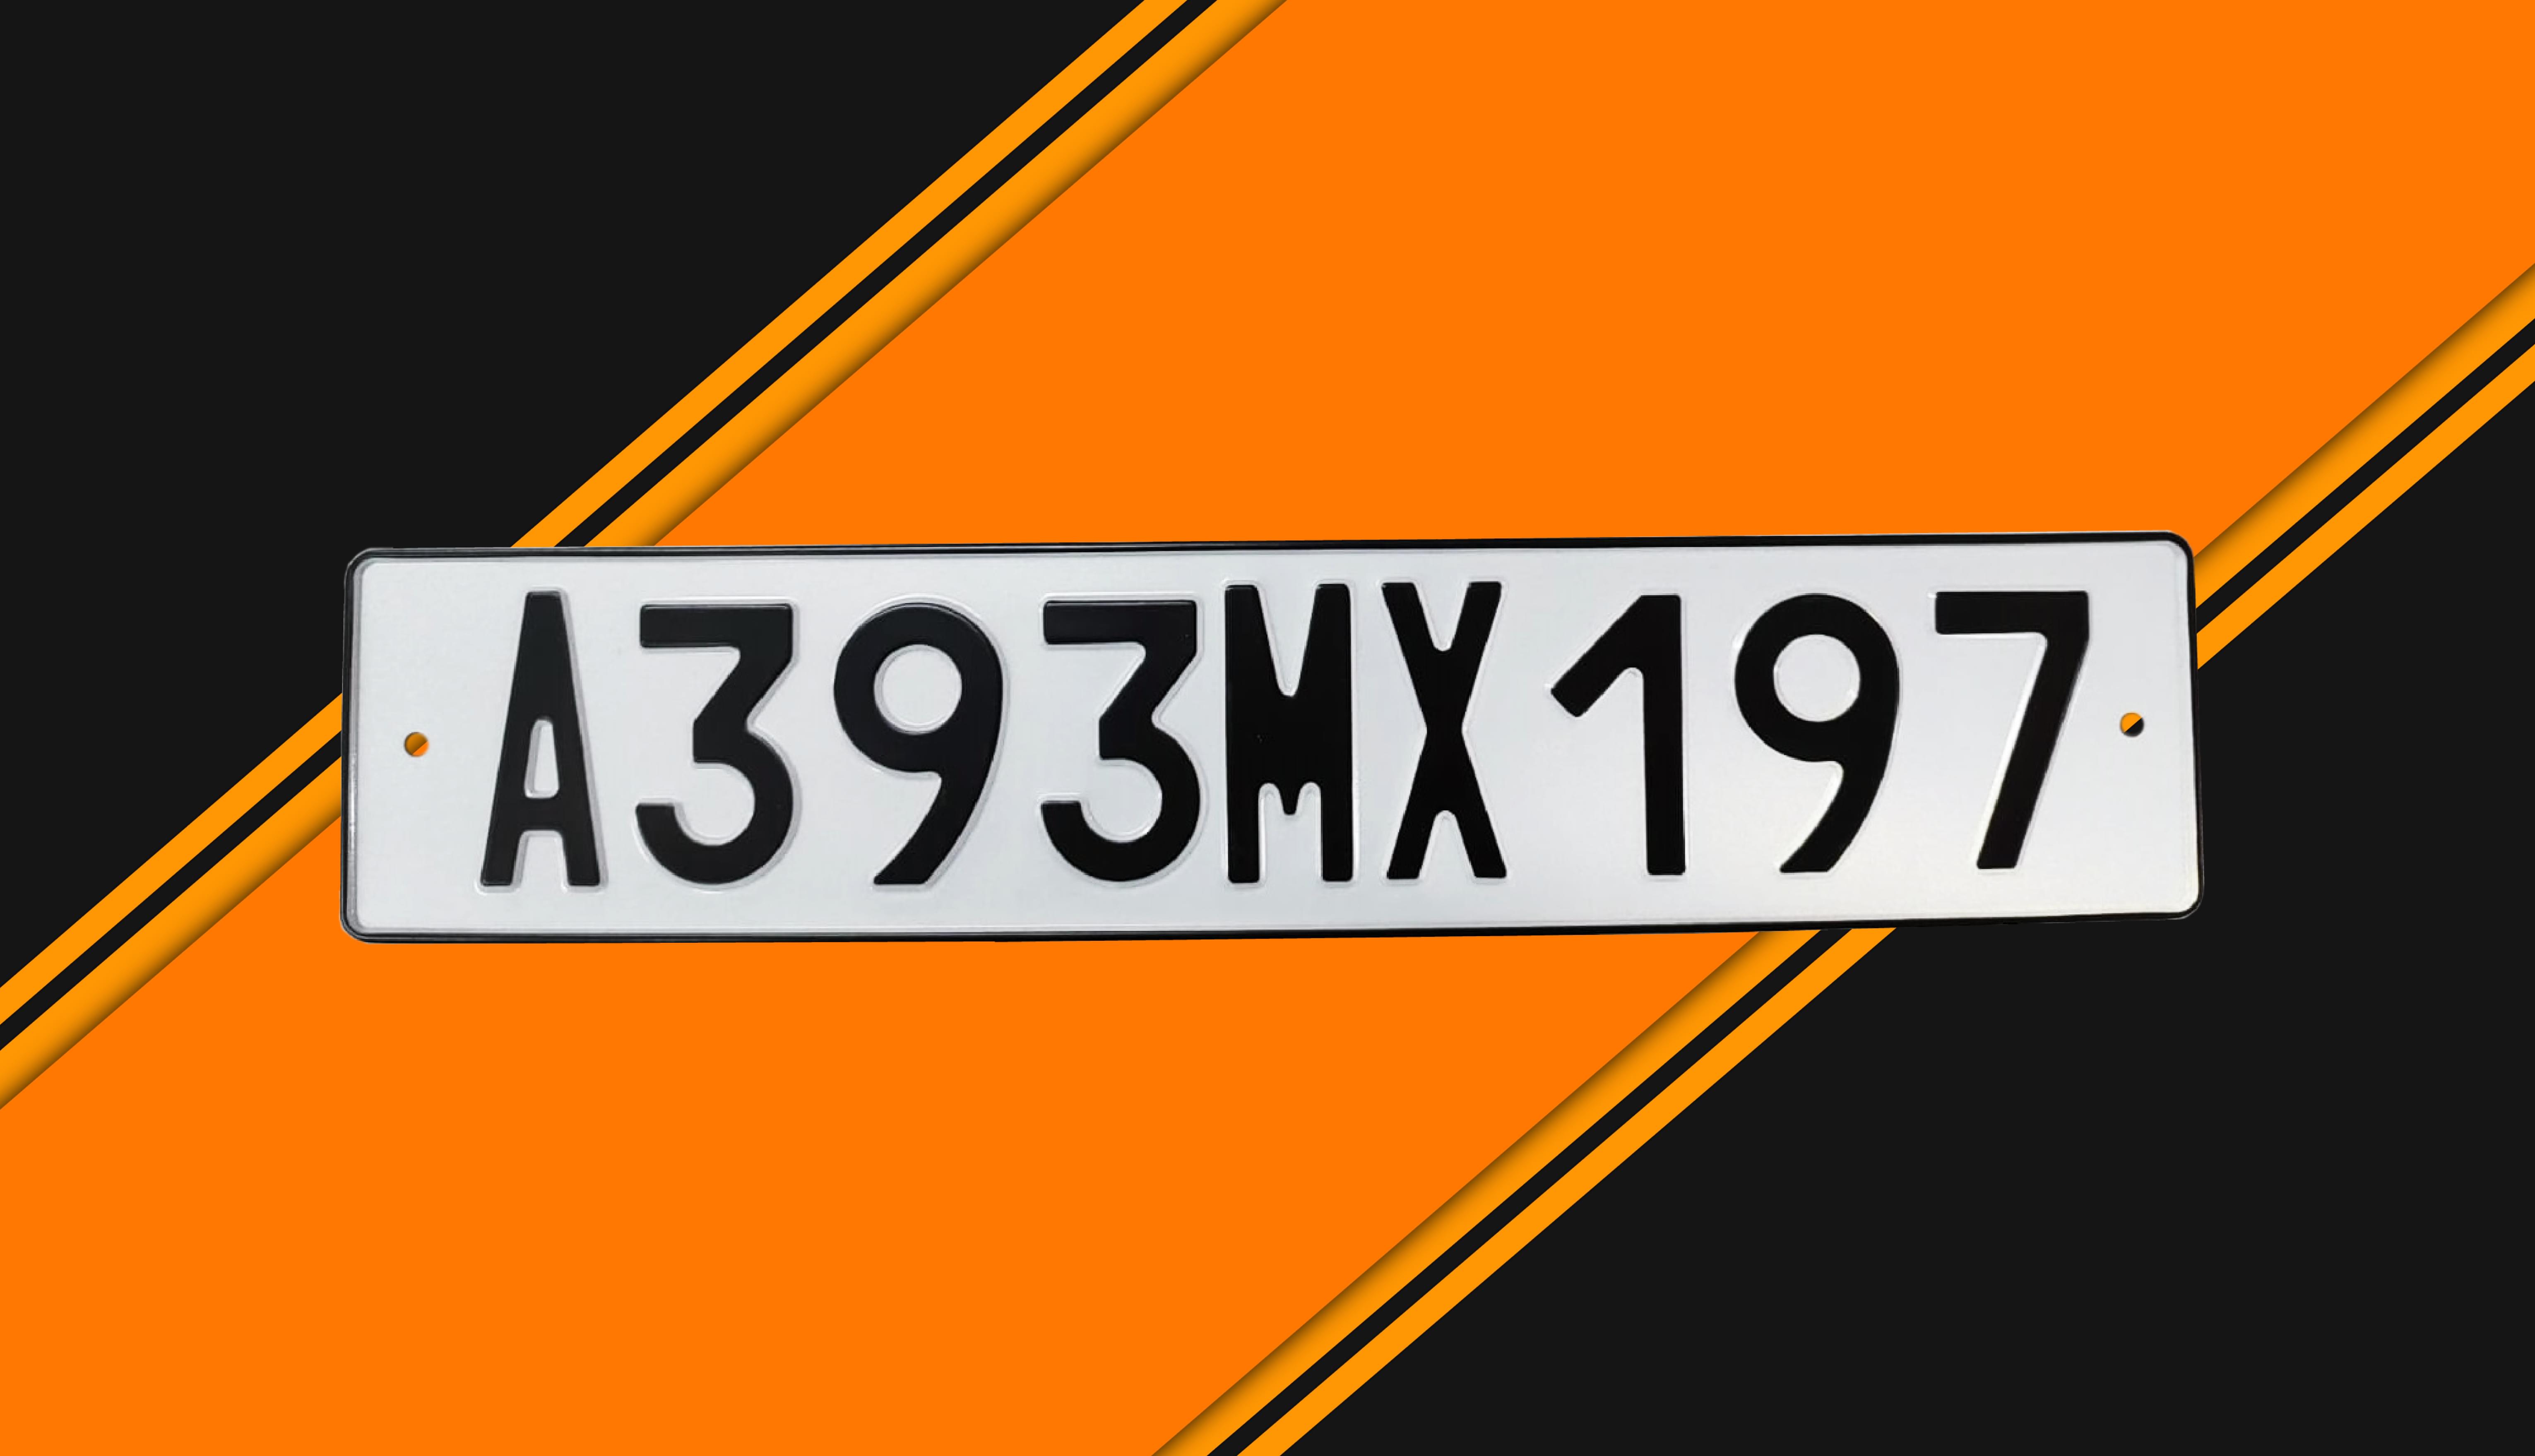 Автомобильный номерной знак A393MX197